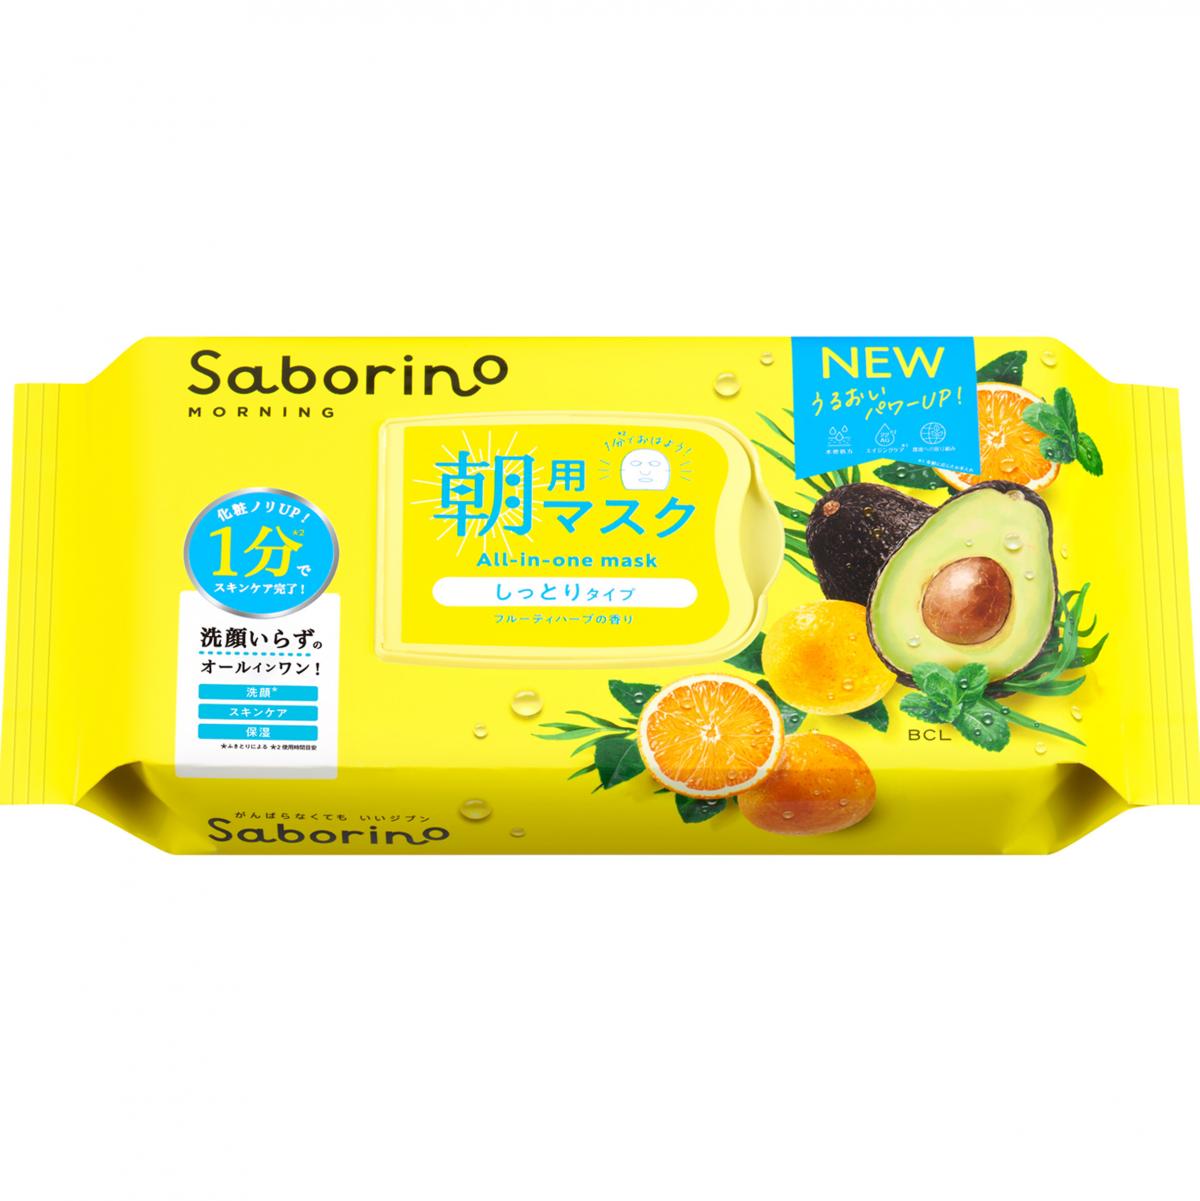 BCL Saborino 早安面膜 32枚入 牛油果(酪梨)鮮果 保濕打底型 (黃) -90202(平行進口)